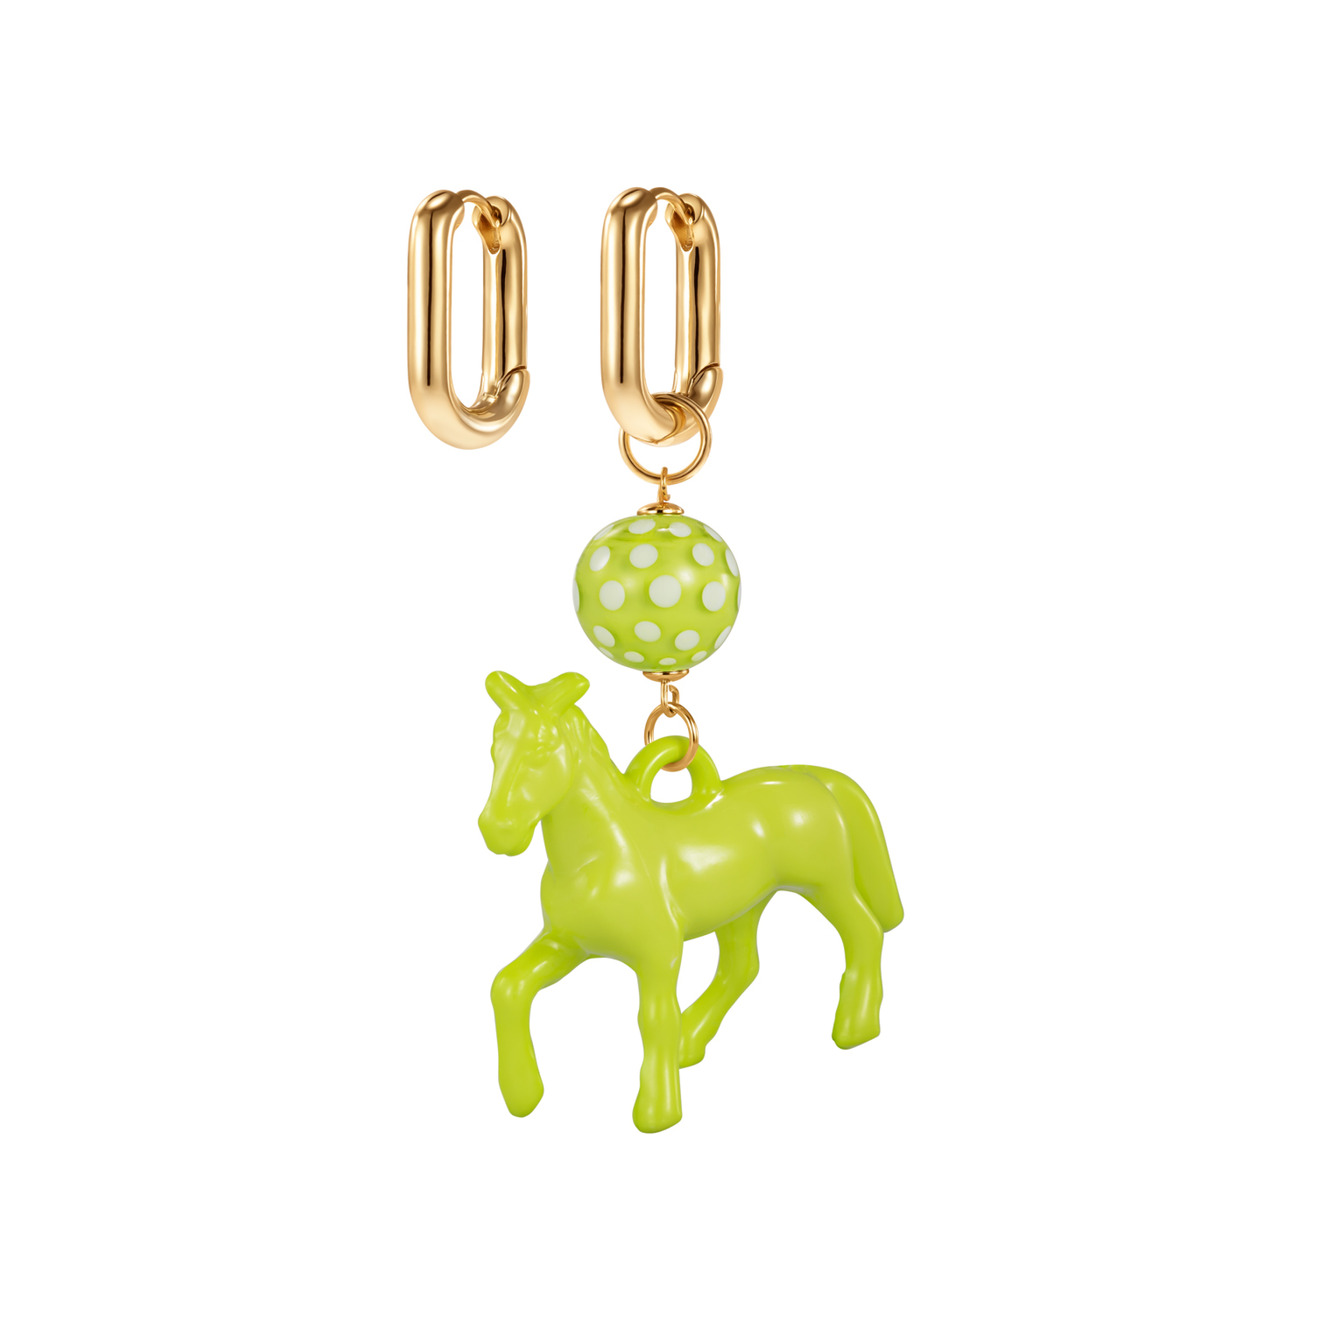 Kotlo Studio Серьги с зеленой лошадкой и бусиной Мурано серьги kotlo studio розовая лошадка и мурано